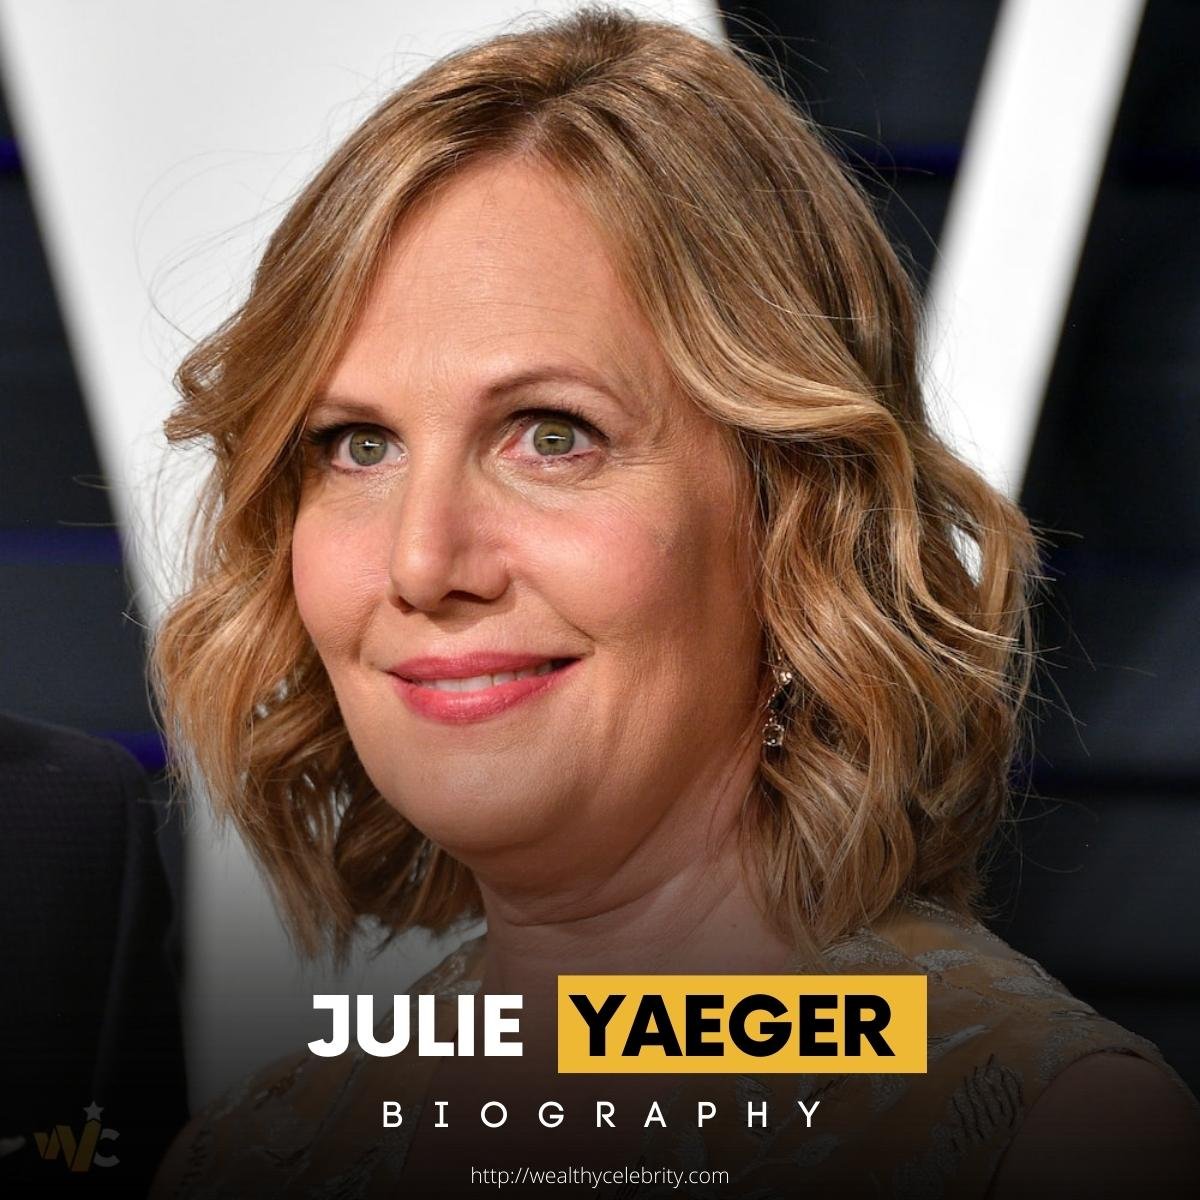 Julie Yaeger